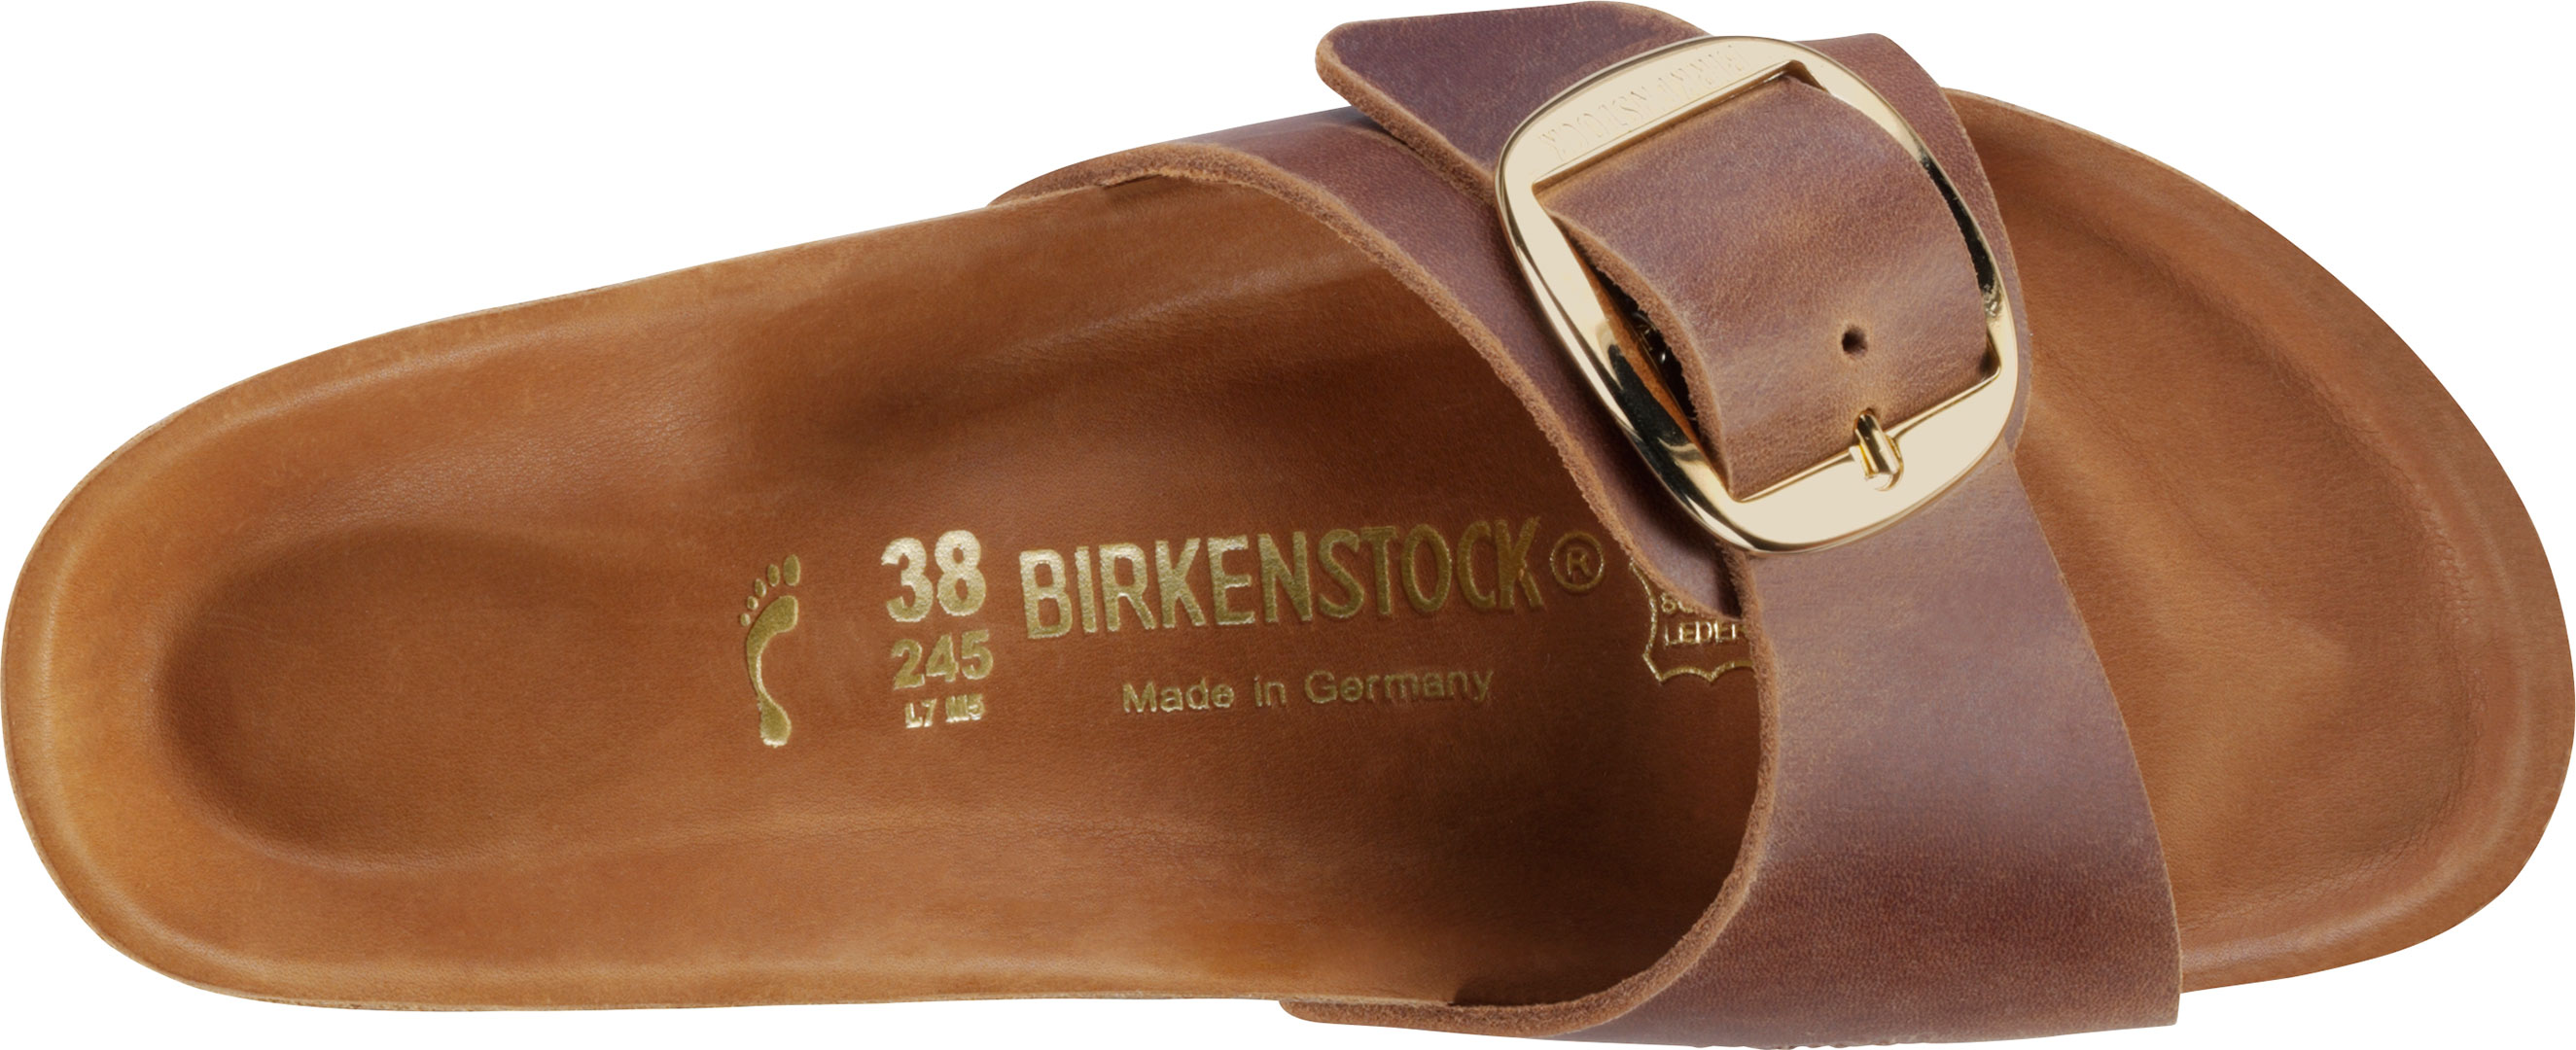 birkenstock 38